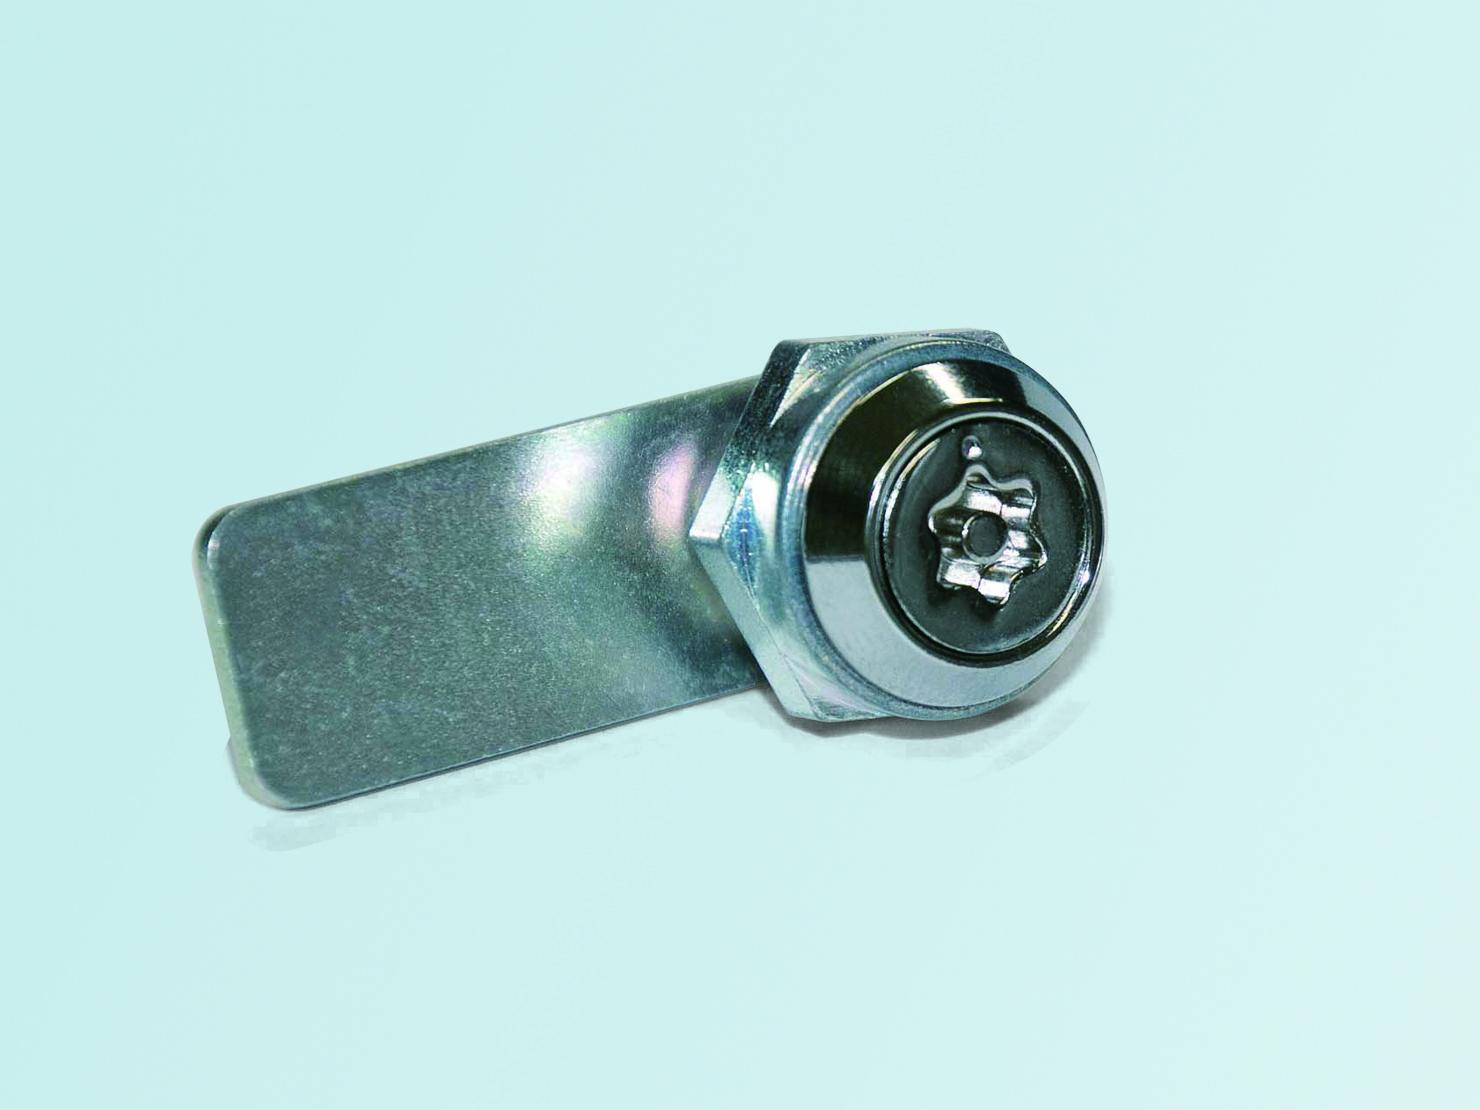 Hexalobular Cam Lock